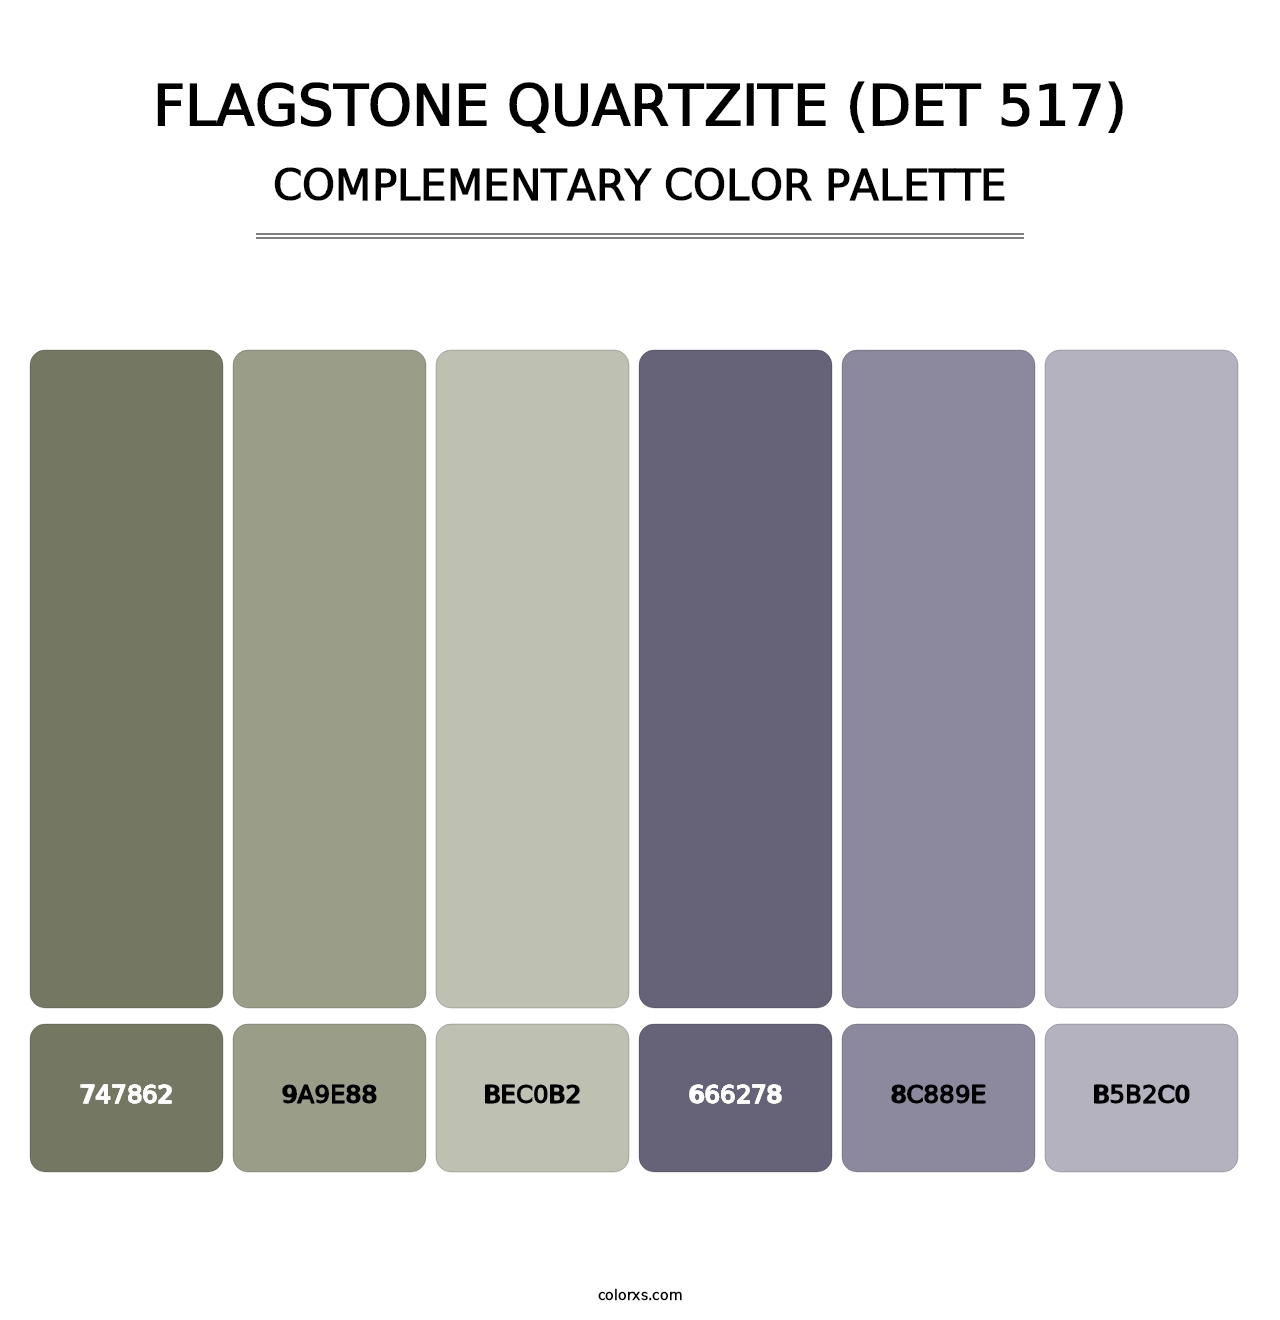 Flagstone Quartzite (DET 517) - Complementary Color Palette